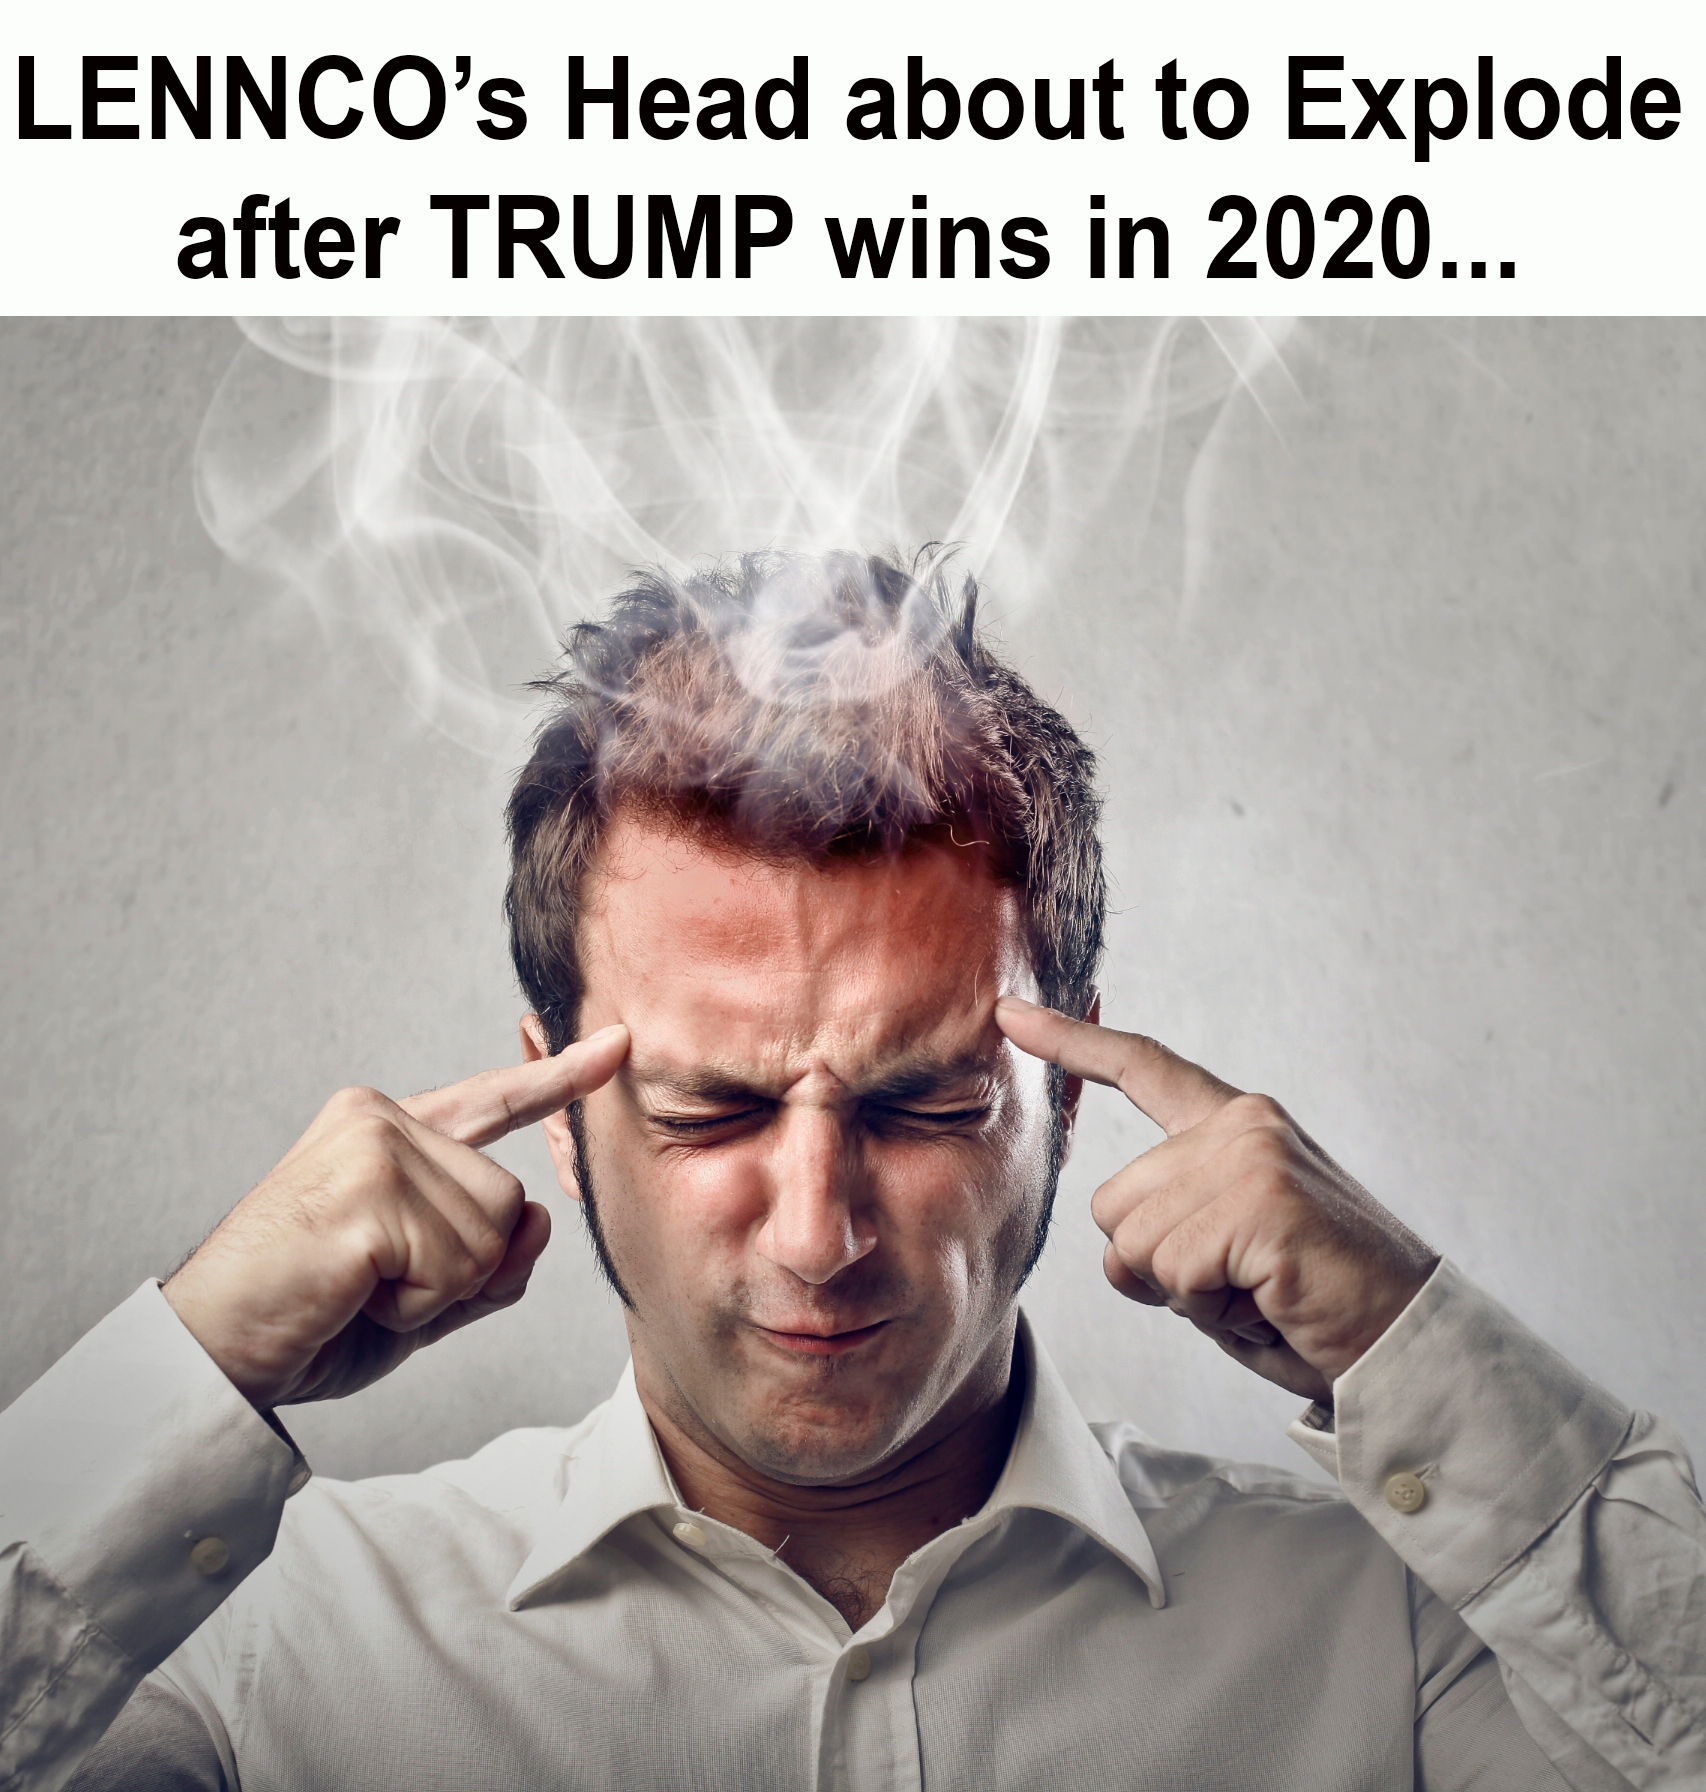 LENNCO's Head.jpg